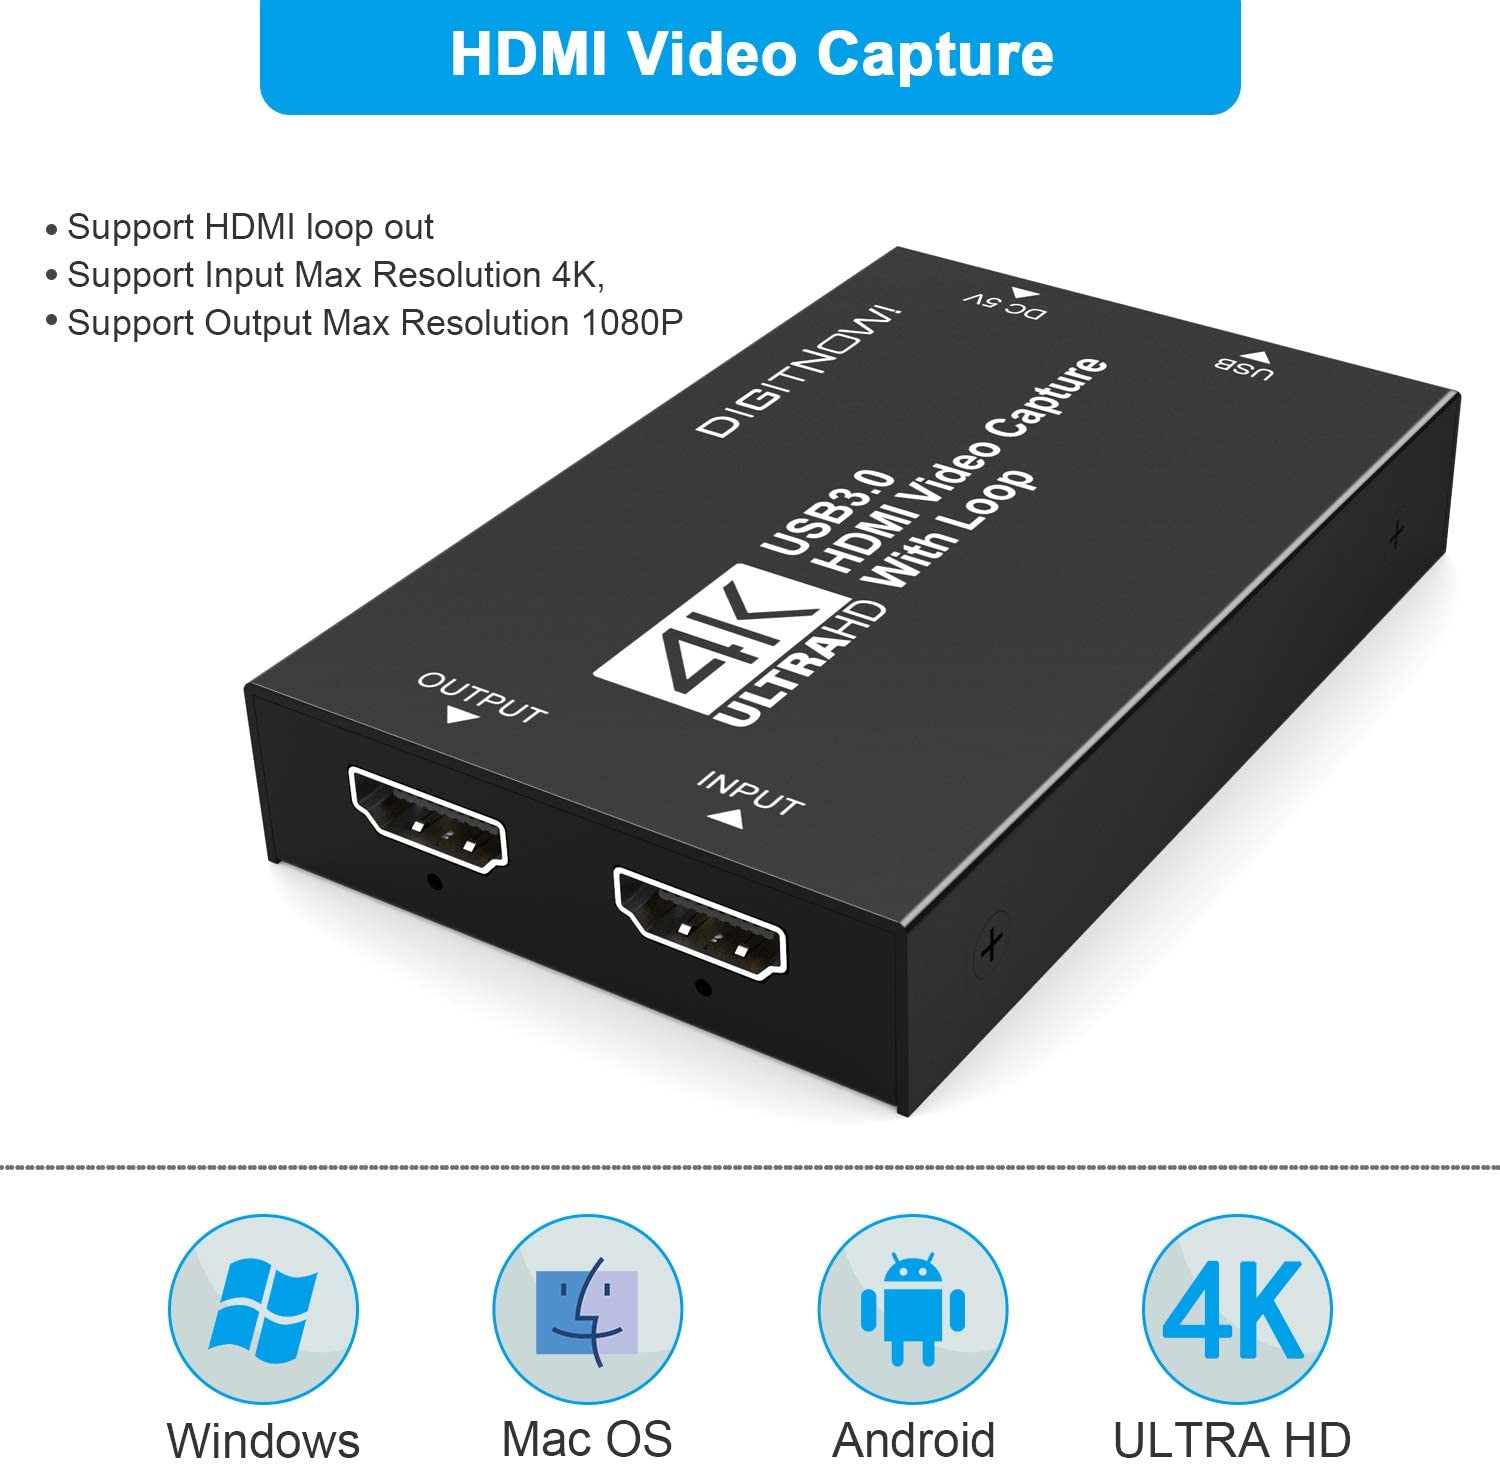 Capturadora Hdmi Full Hd 60hz Usb 3.0 Streaming Win-mac-andr